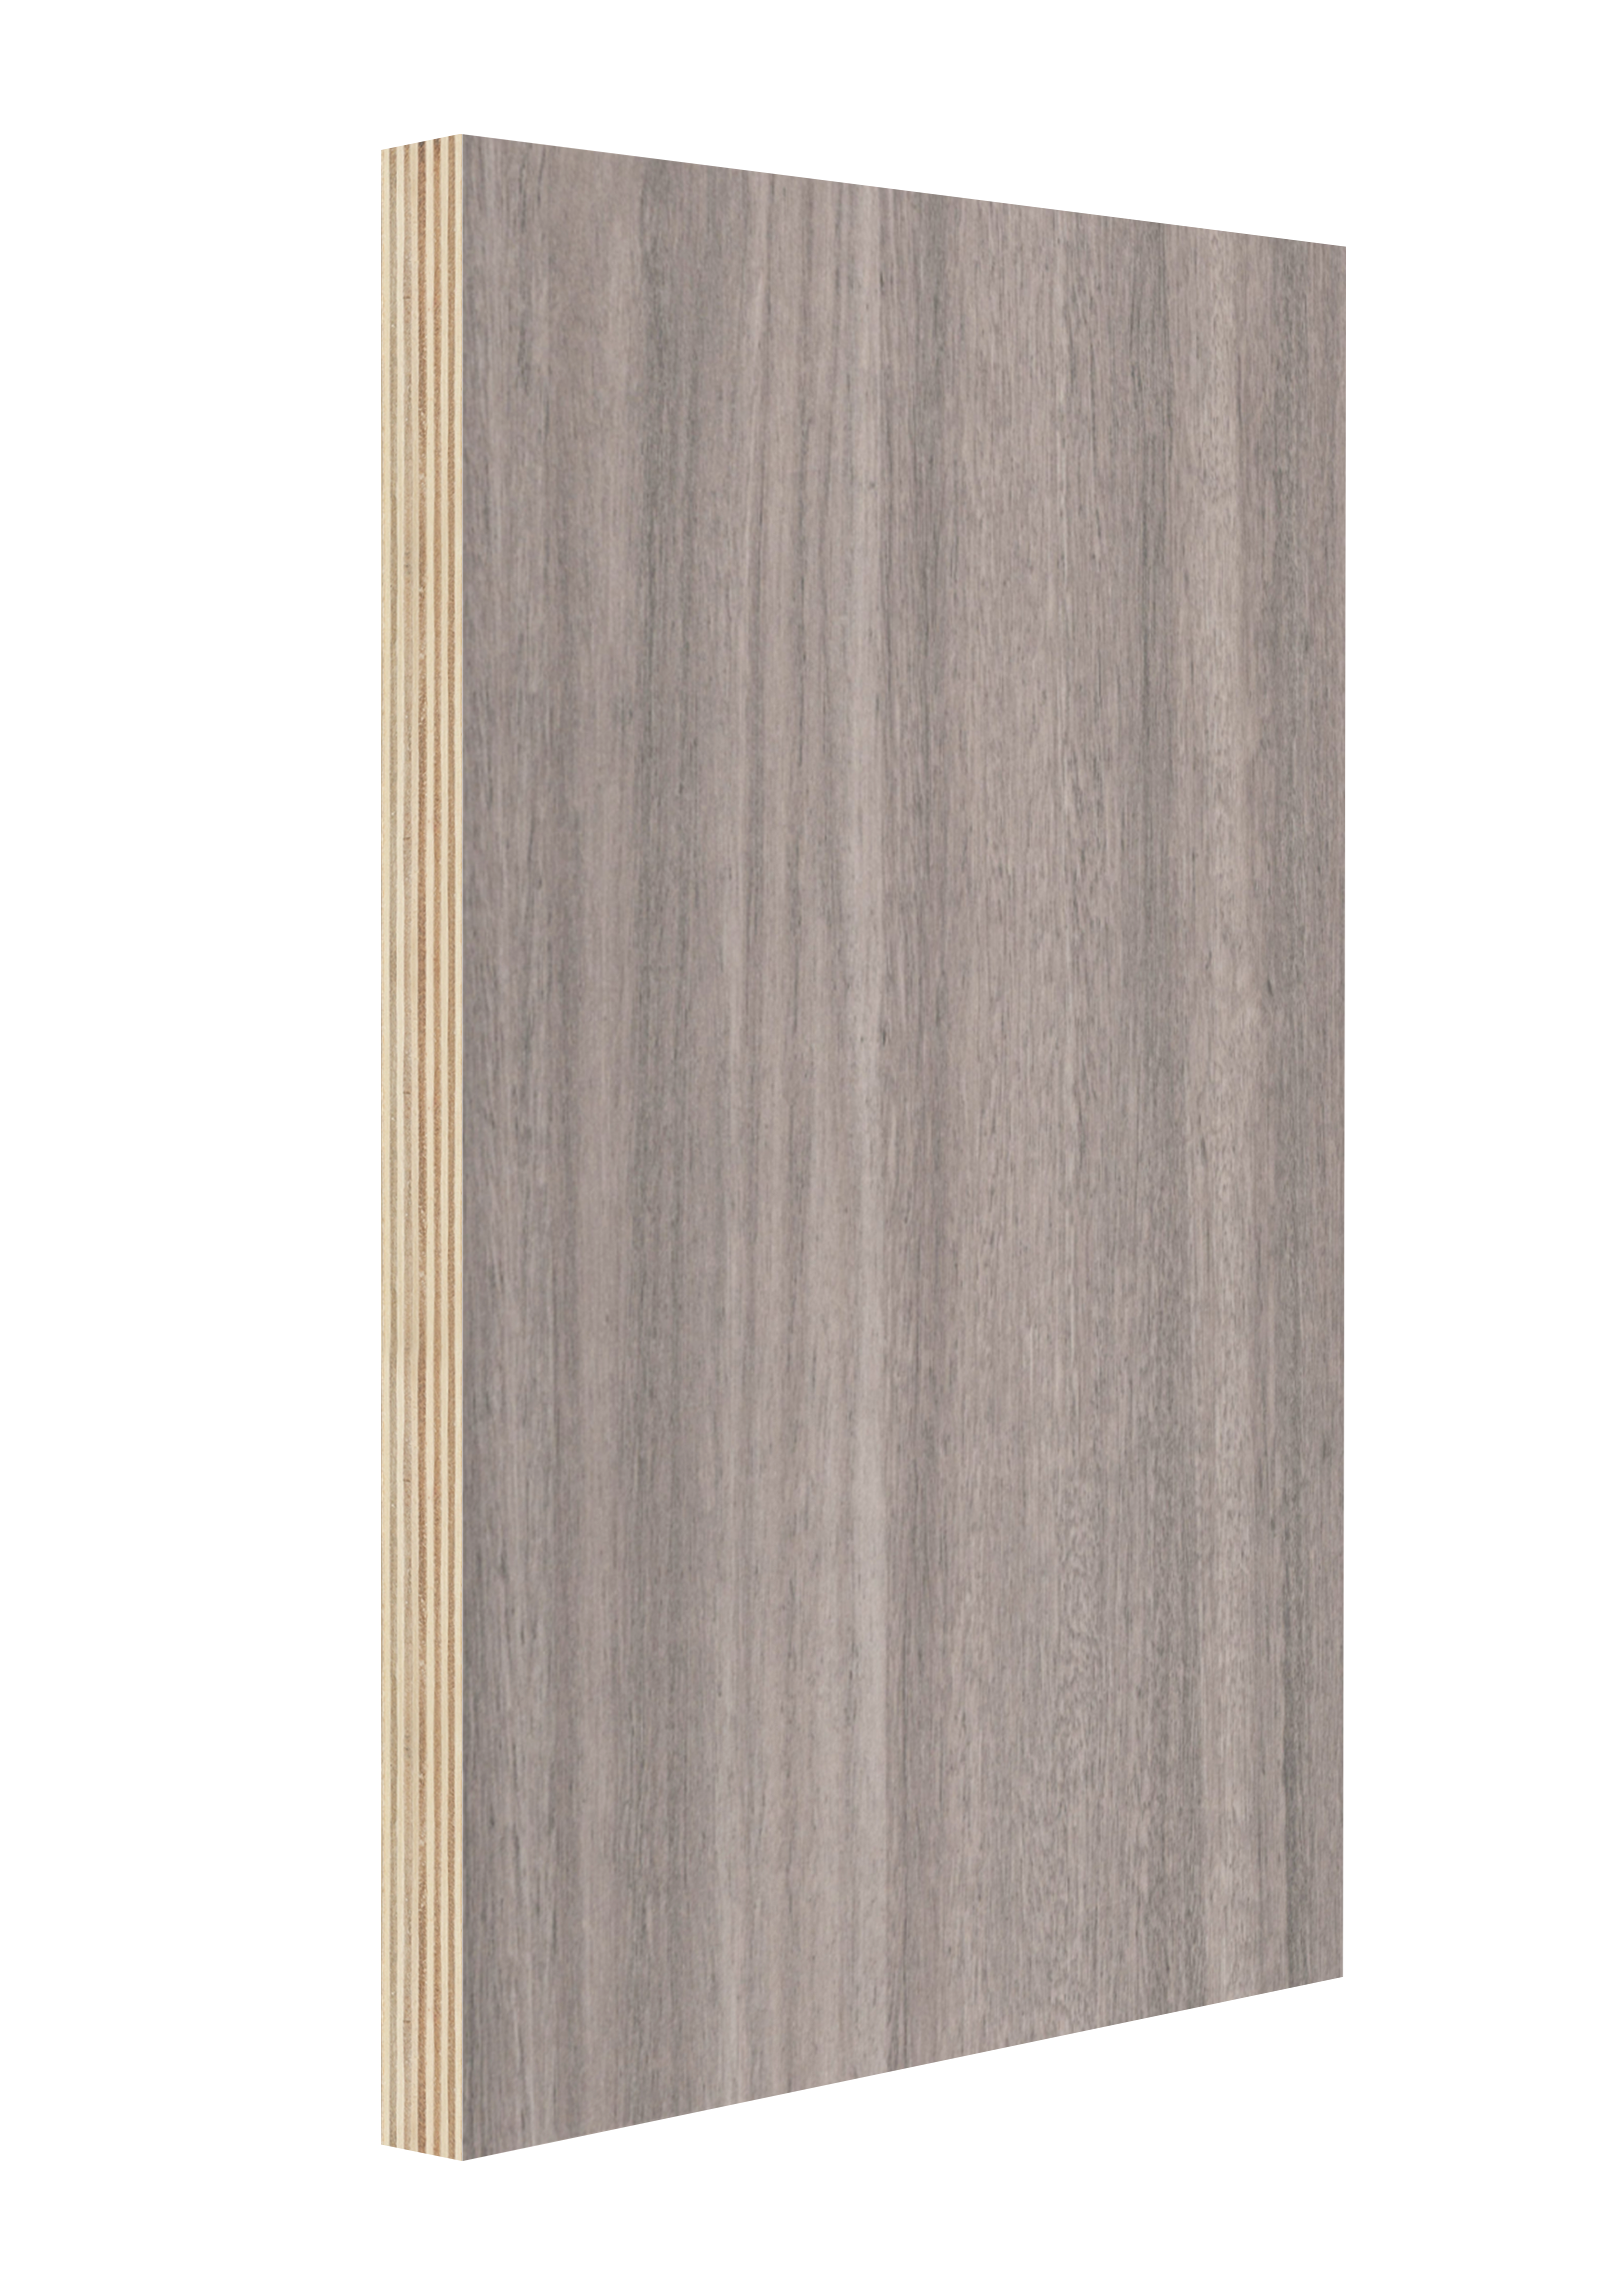 密度板,奥松板,欧松板（OSB),刨花板,定做异形板,门板-临沂市恒丽木业